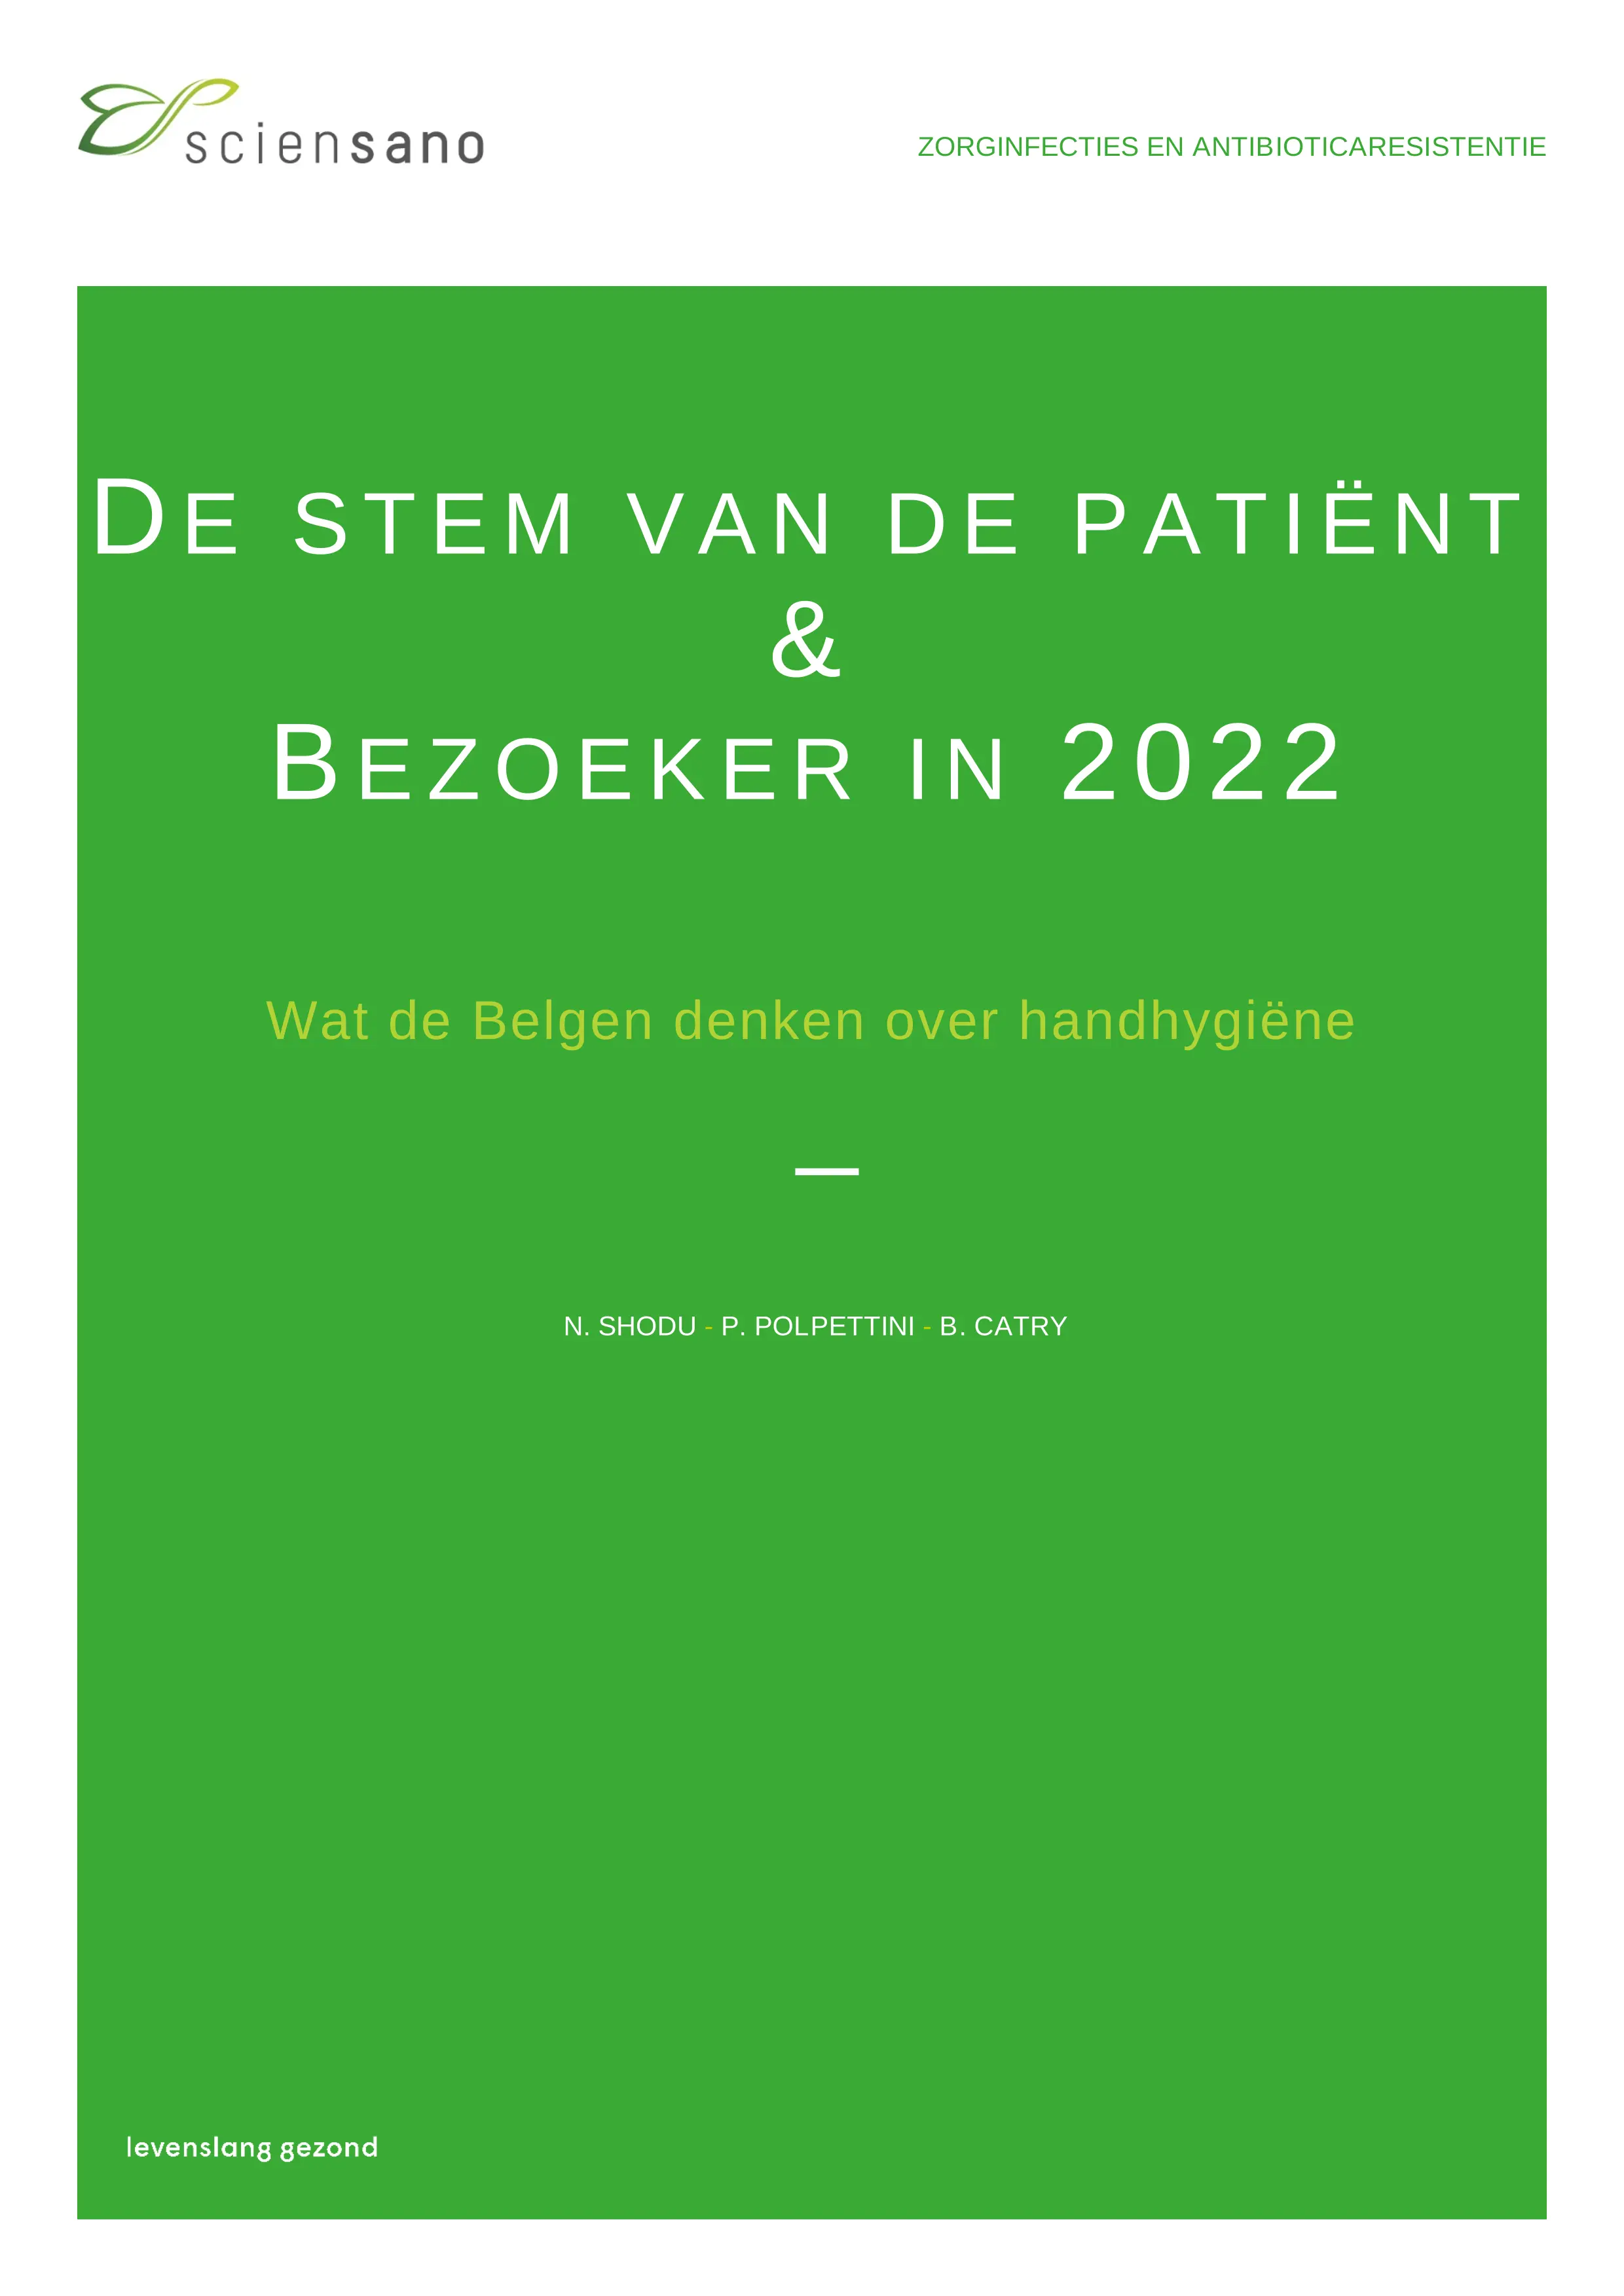 preview of sciensano_de-stem-van-de-patient-bezoeker-in-2022.pdf